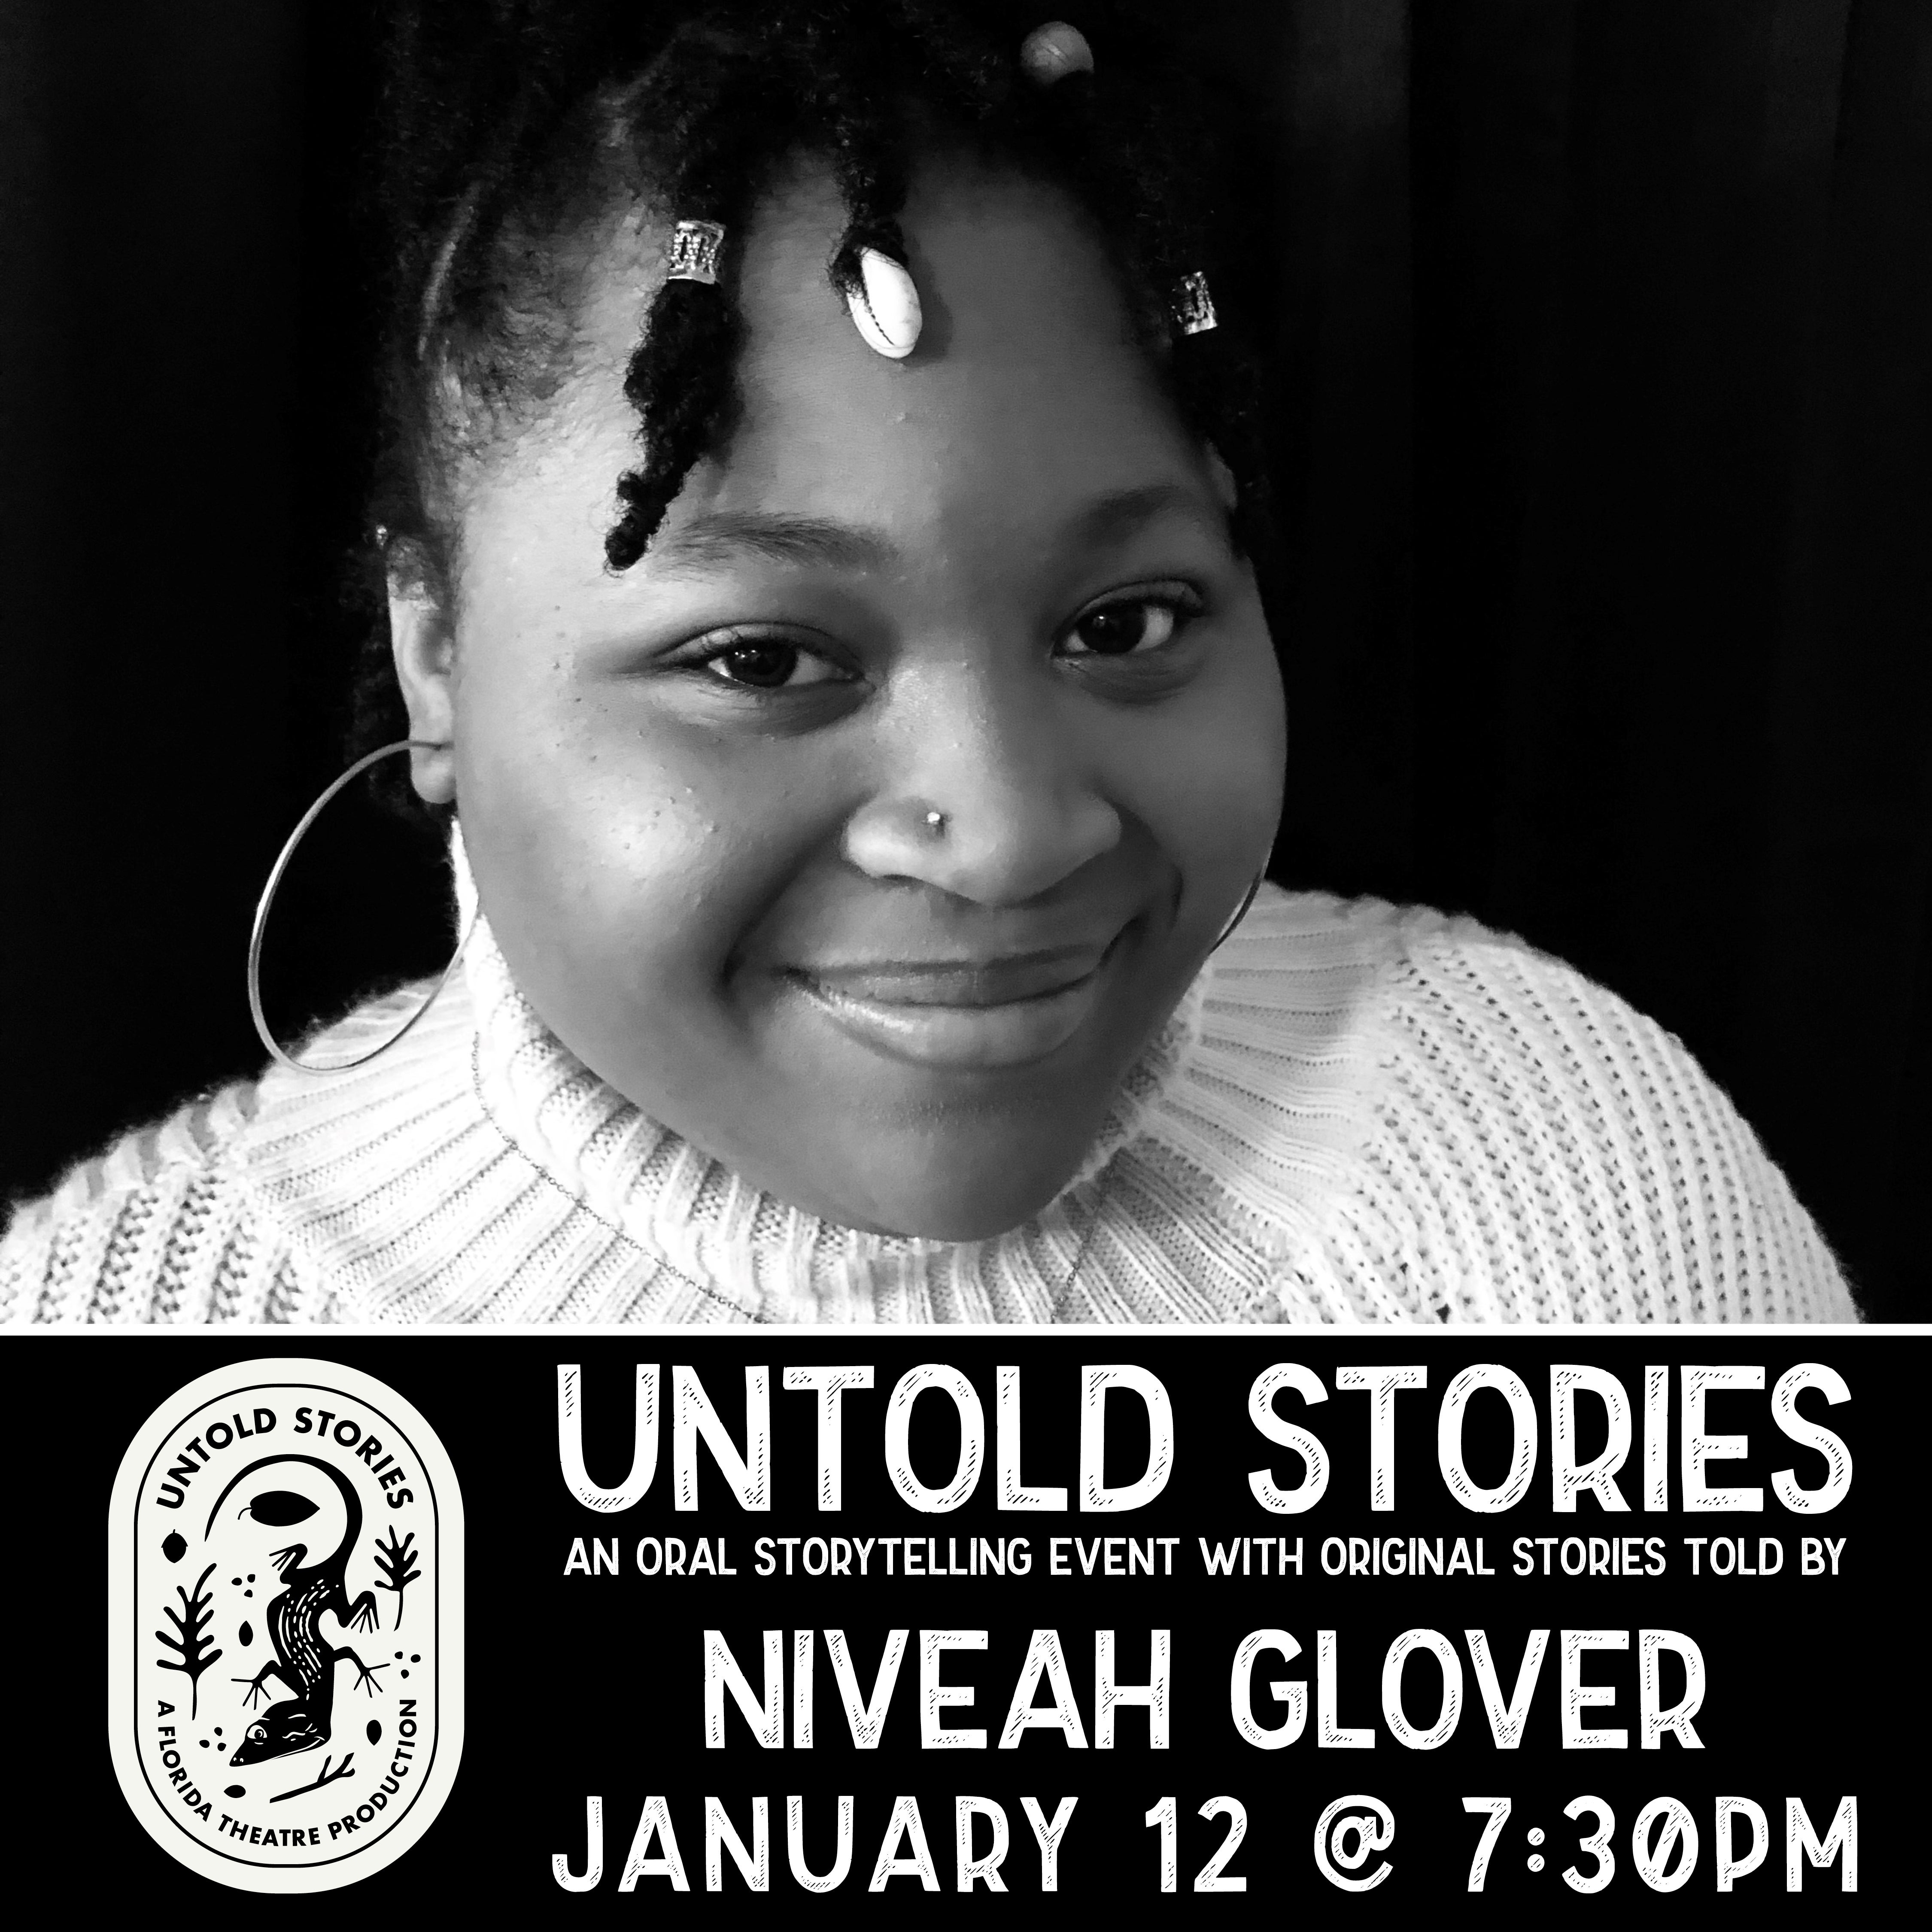 IG-Untold Stories-Niveah Glover.jpg